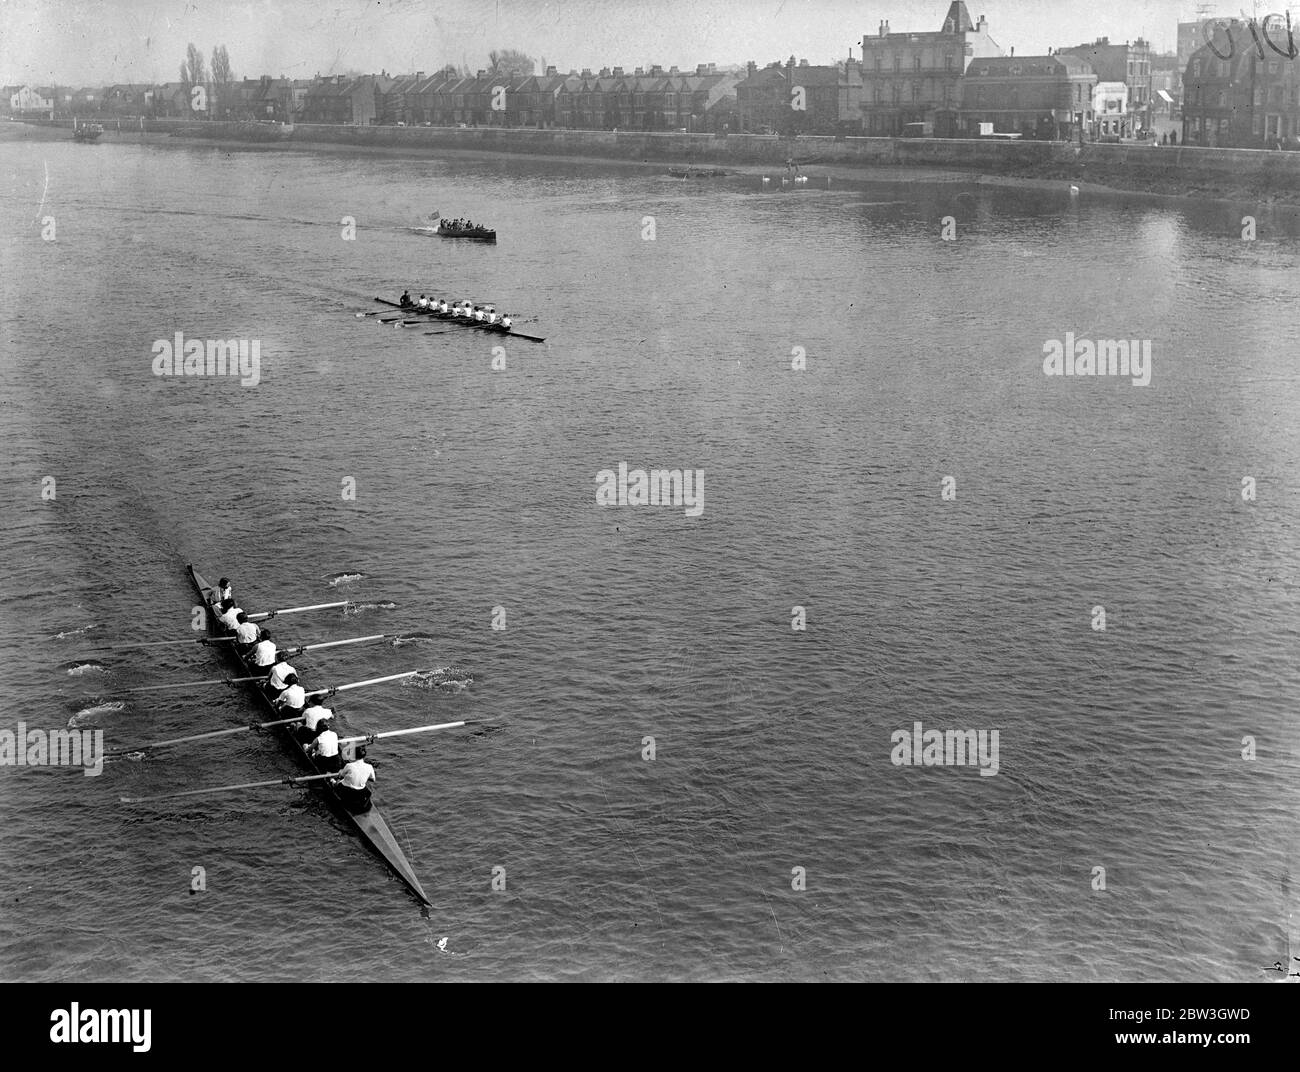 London University Bear Cambridge dans la course de bateau pour femmes à Barnes . L'équipe de l'Université de Londres termine bien devant Cambridge au pont Barnes . Londres sur la gauche. 21 mars 1935 Banque D'Images